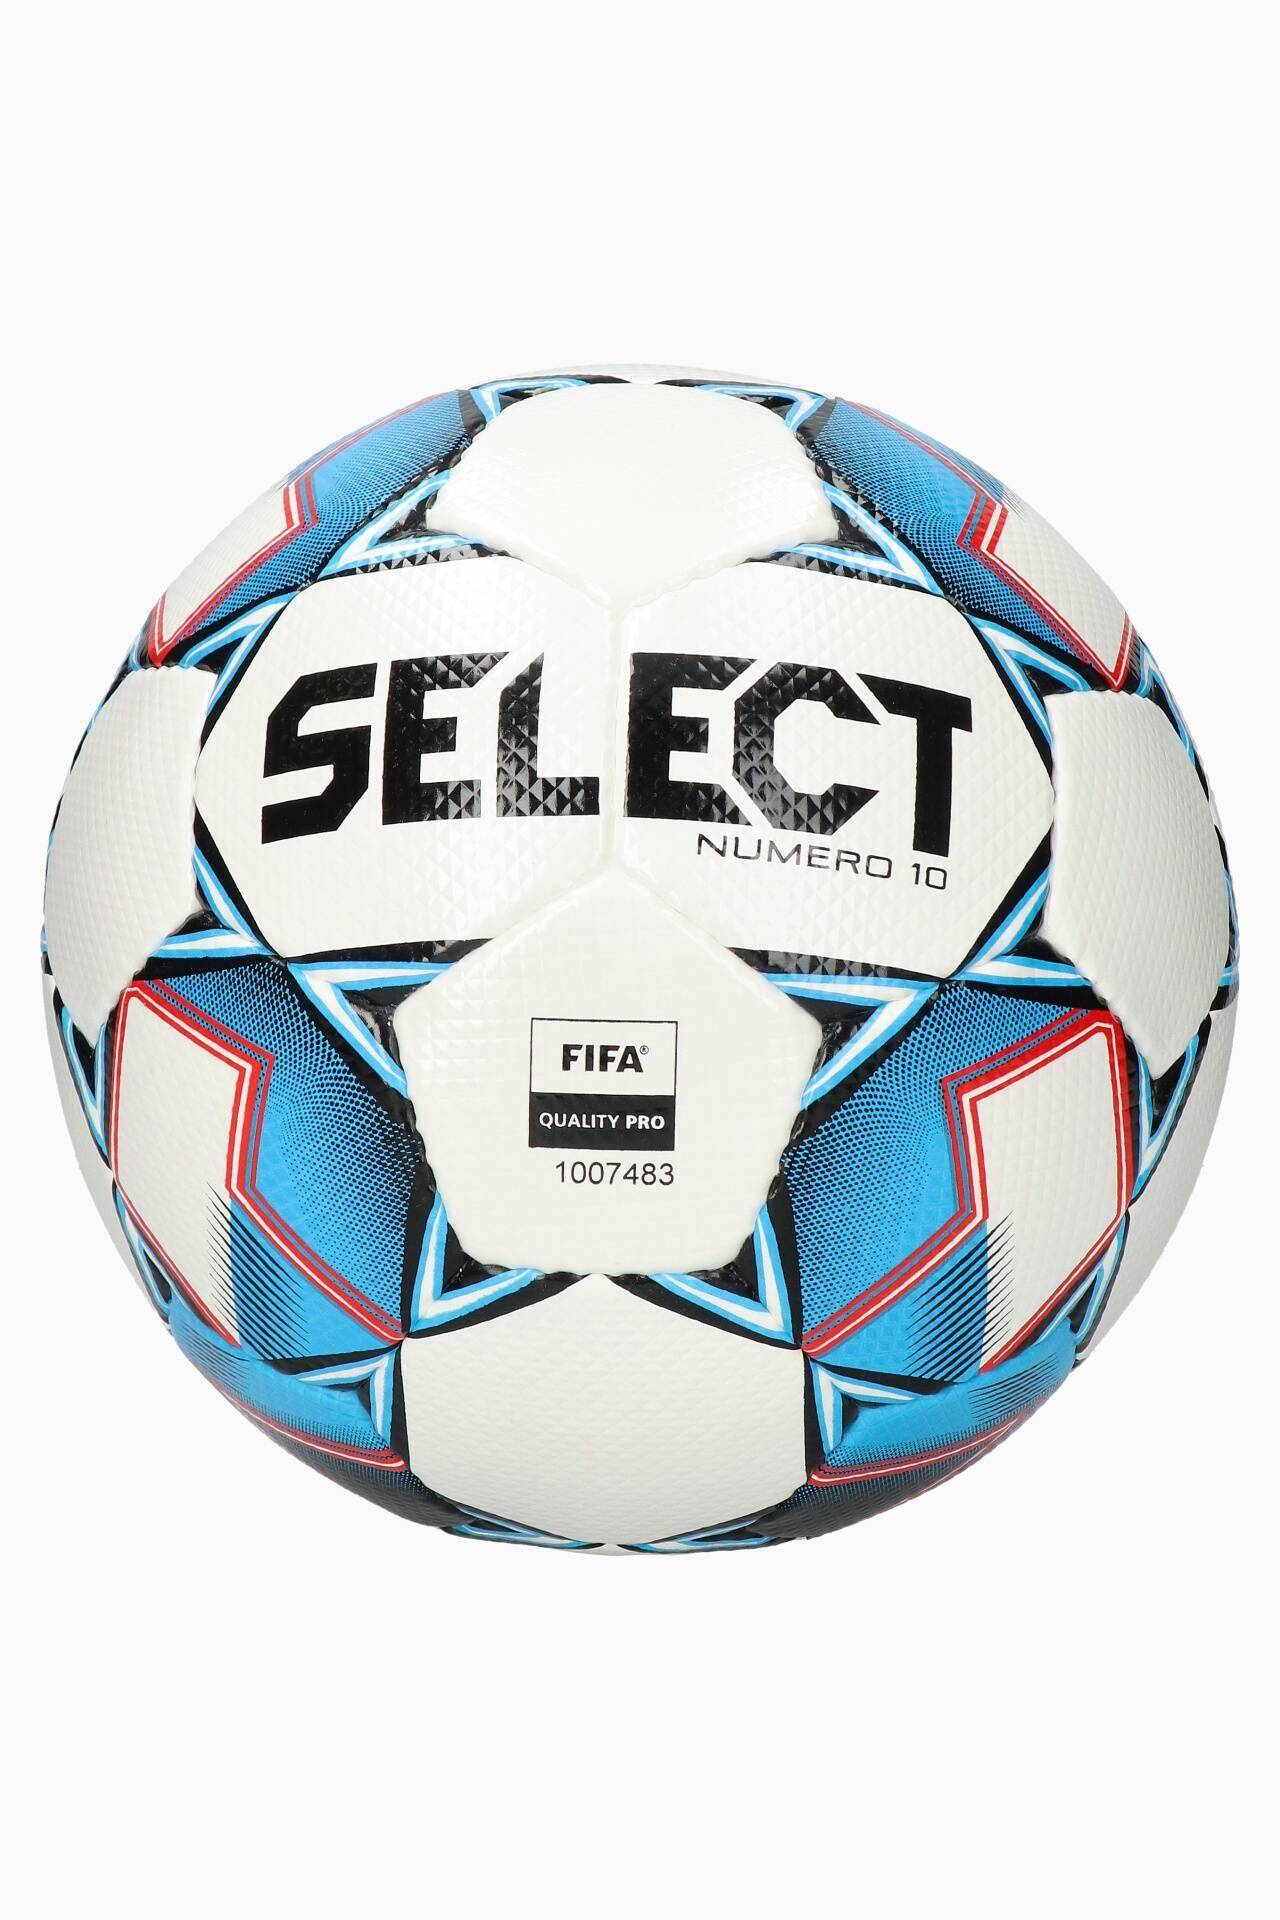 Select piłka nożna Numero 10 v22 FIFA #5